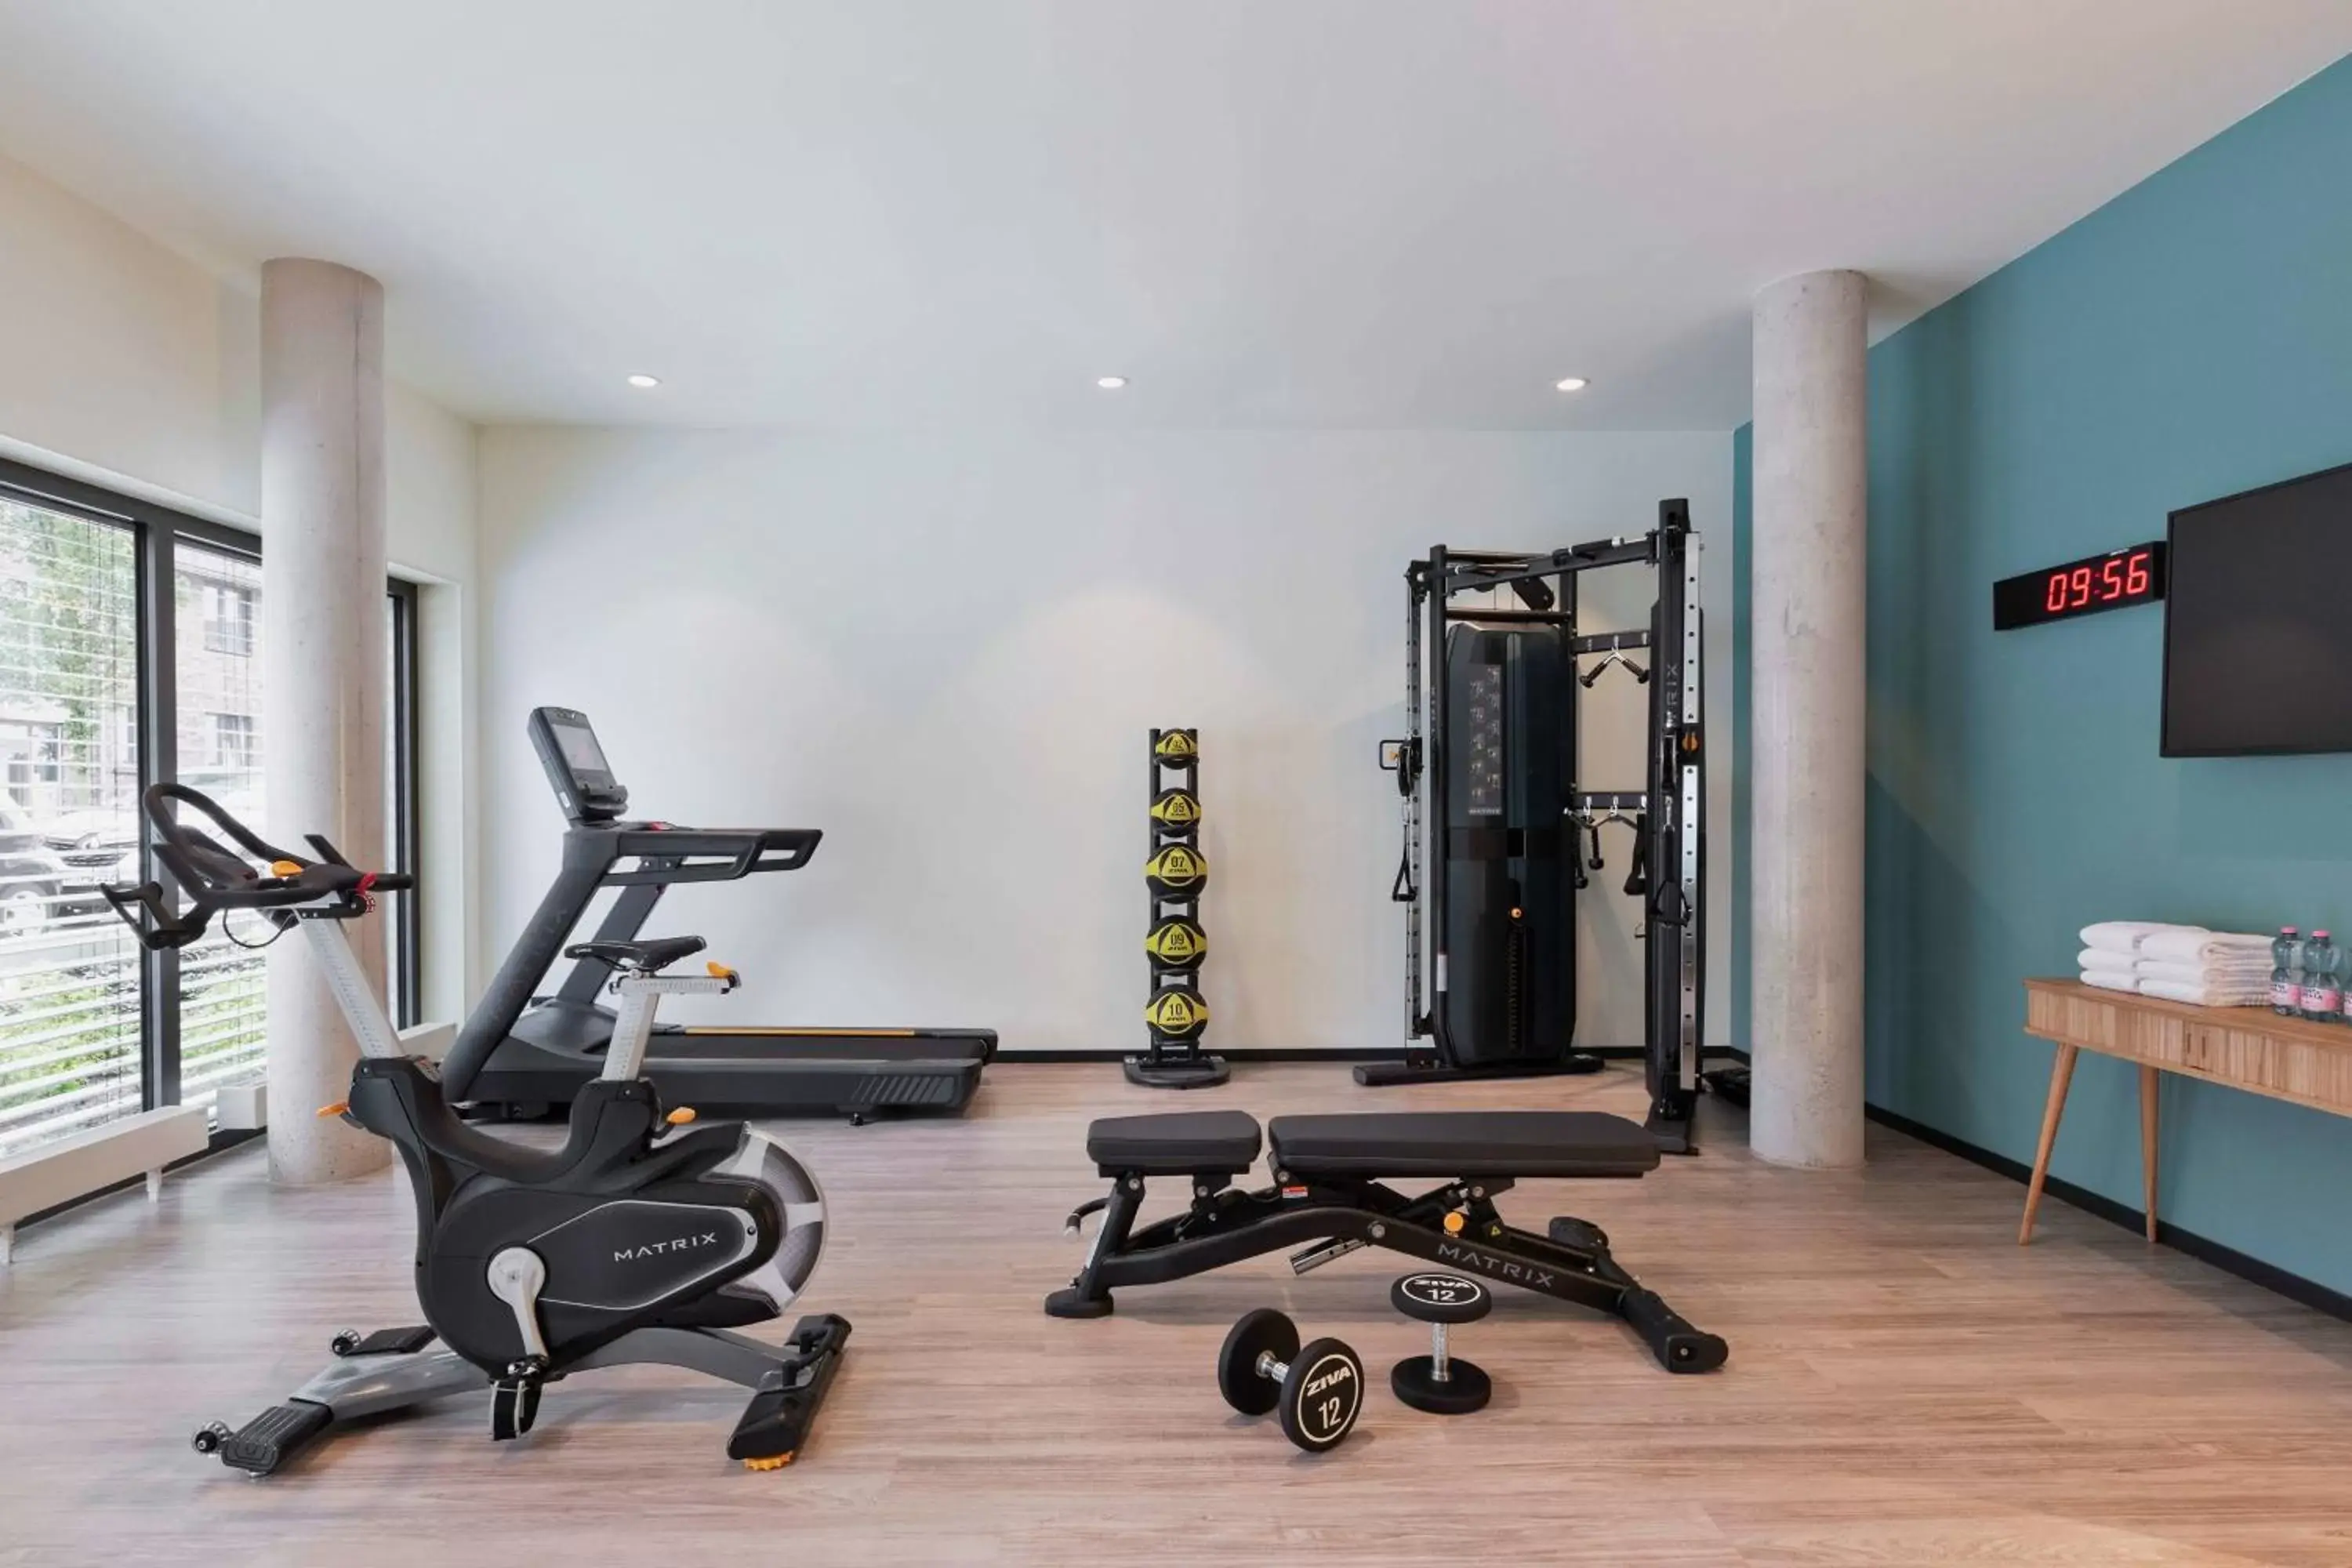 Fitness centre/facilities, Fitness Center/Facilities in Residence Inn by Marriott Hamburg Altona